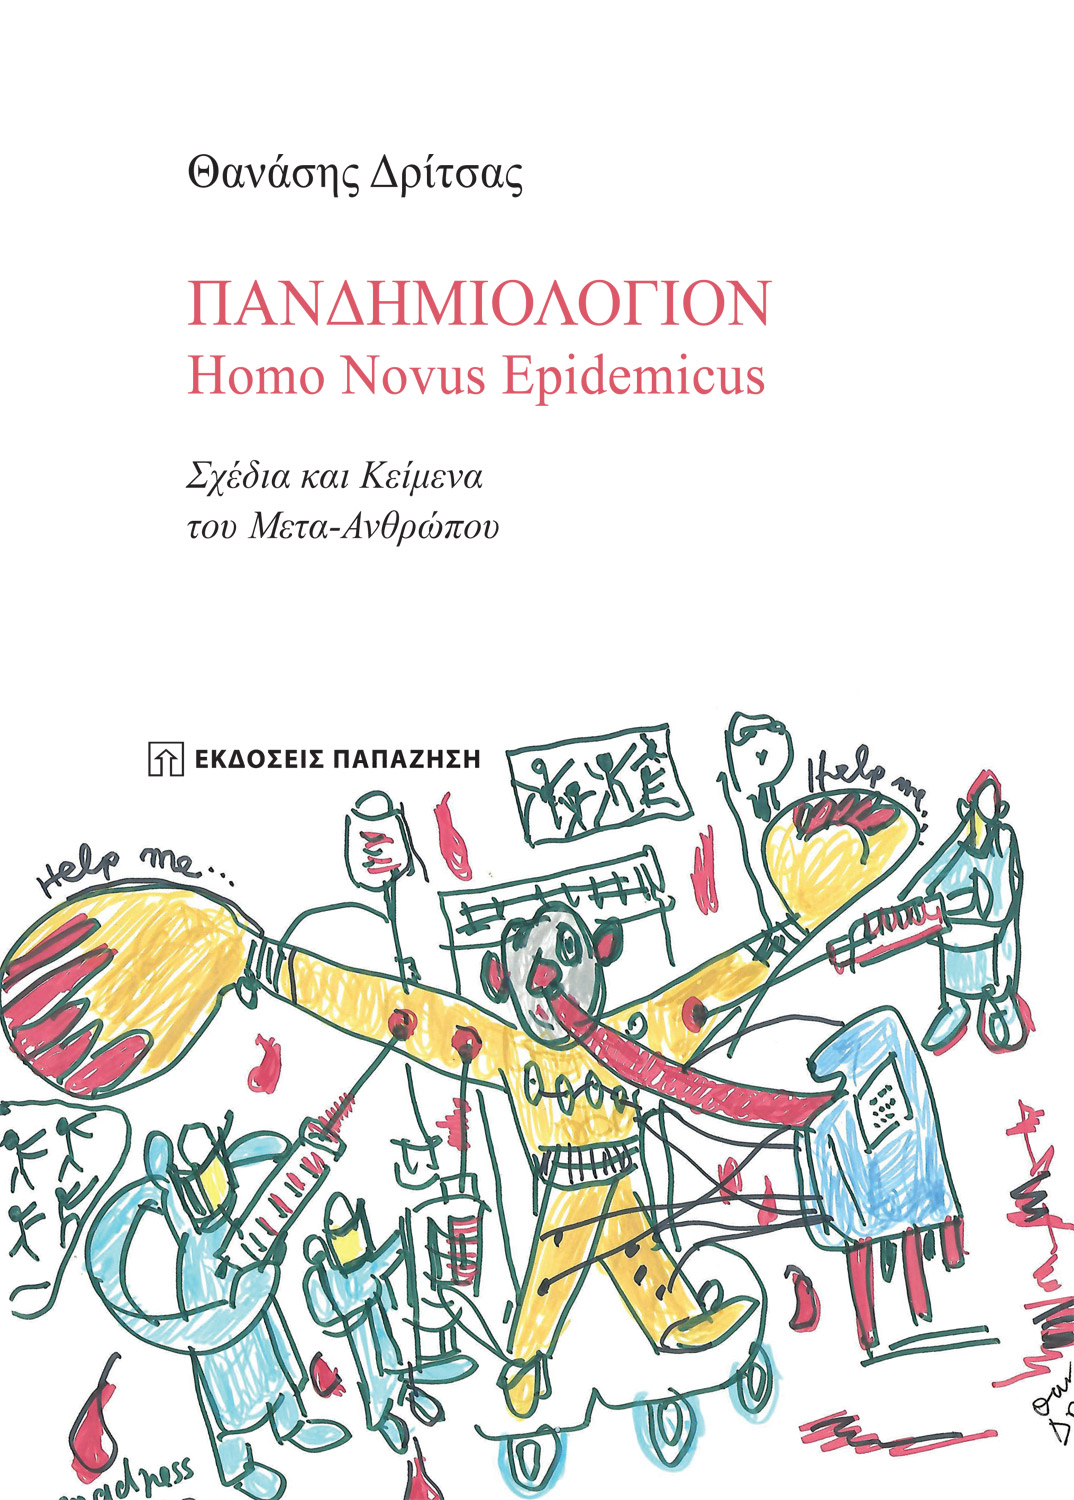 Πανδημιολόγιον: Homo Novus Epidemicus, Σχέδια και κείμενα του Μετα-Ανθρώπου, Δρίτσας, Θανάσης, Εκδόσεις Παπαζήση, 2021